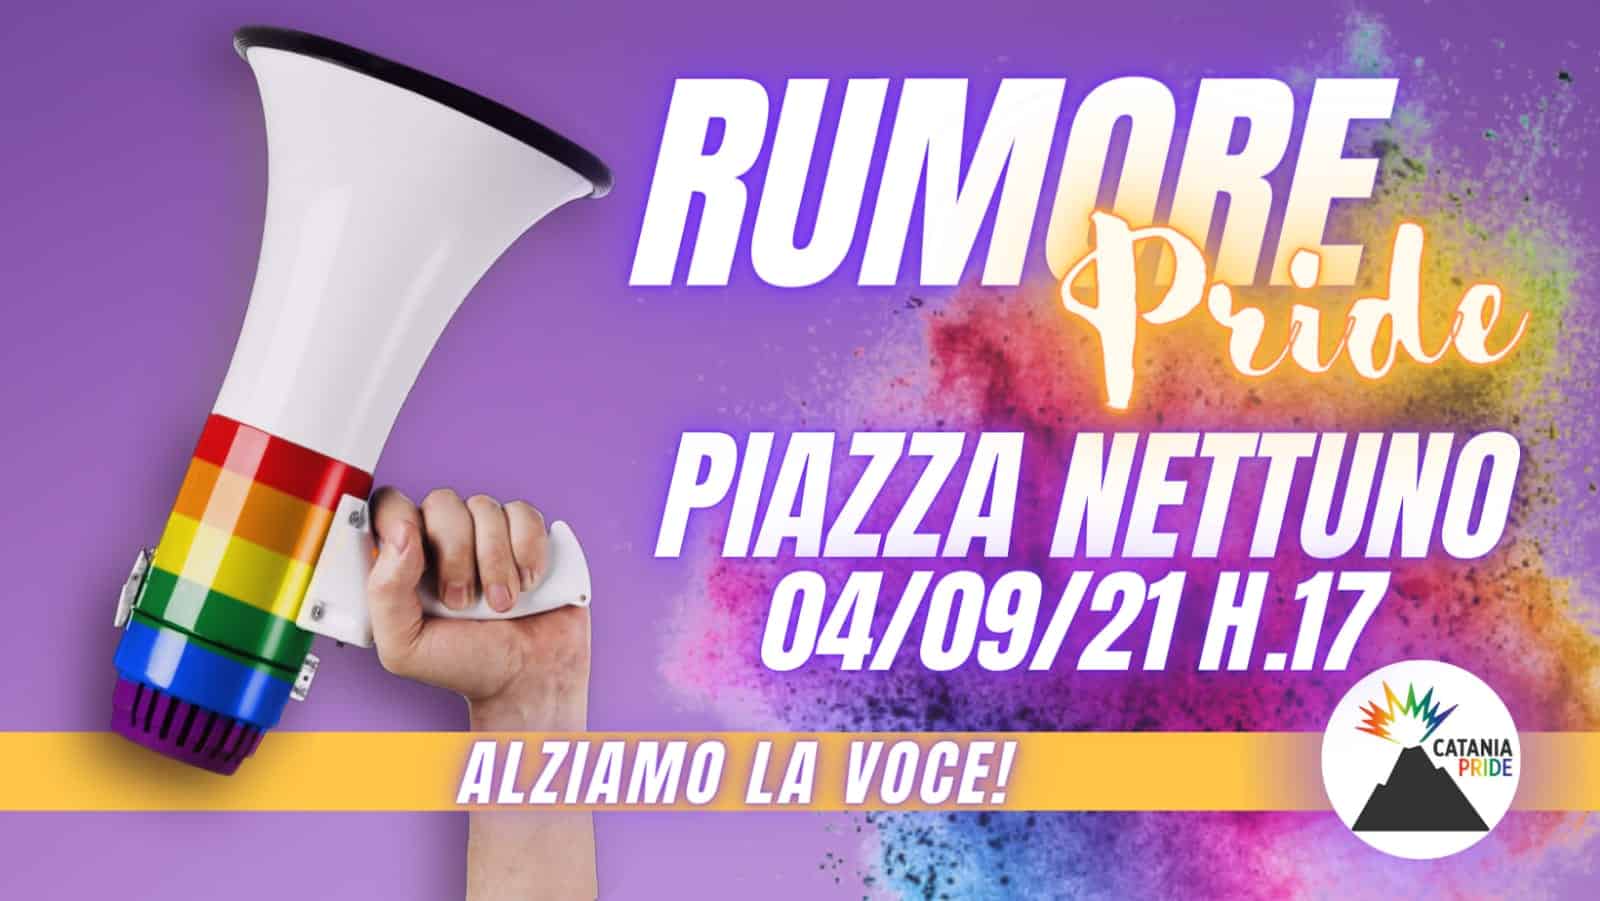 Catania Pride 2021, stop alle incertezze: via libera alla manifestazione del 4 settembre ma in forma statica